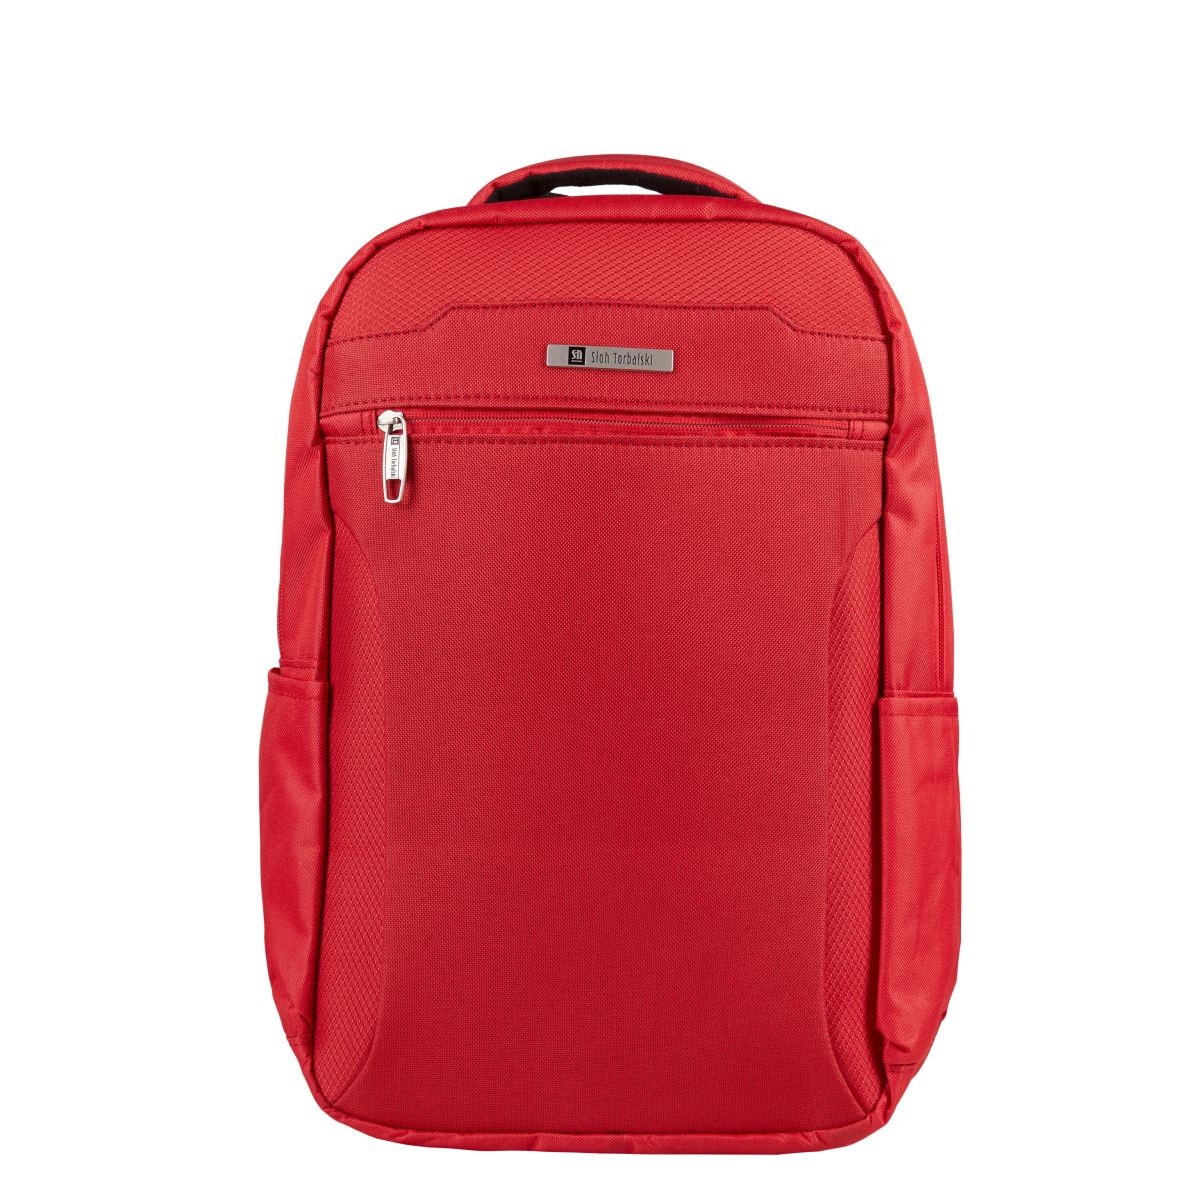 czerwony plecak podróżny 40x20x25 cm bagaż podręczny z rączką i uchwytem na walizkę